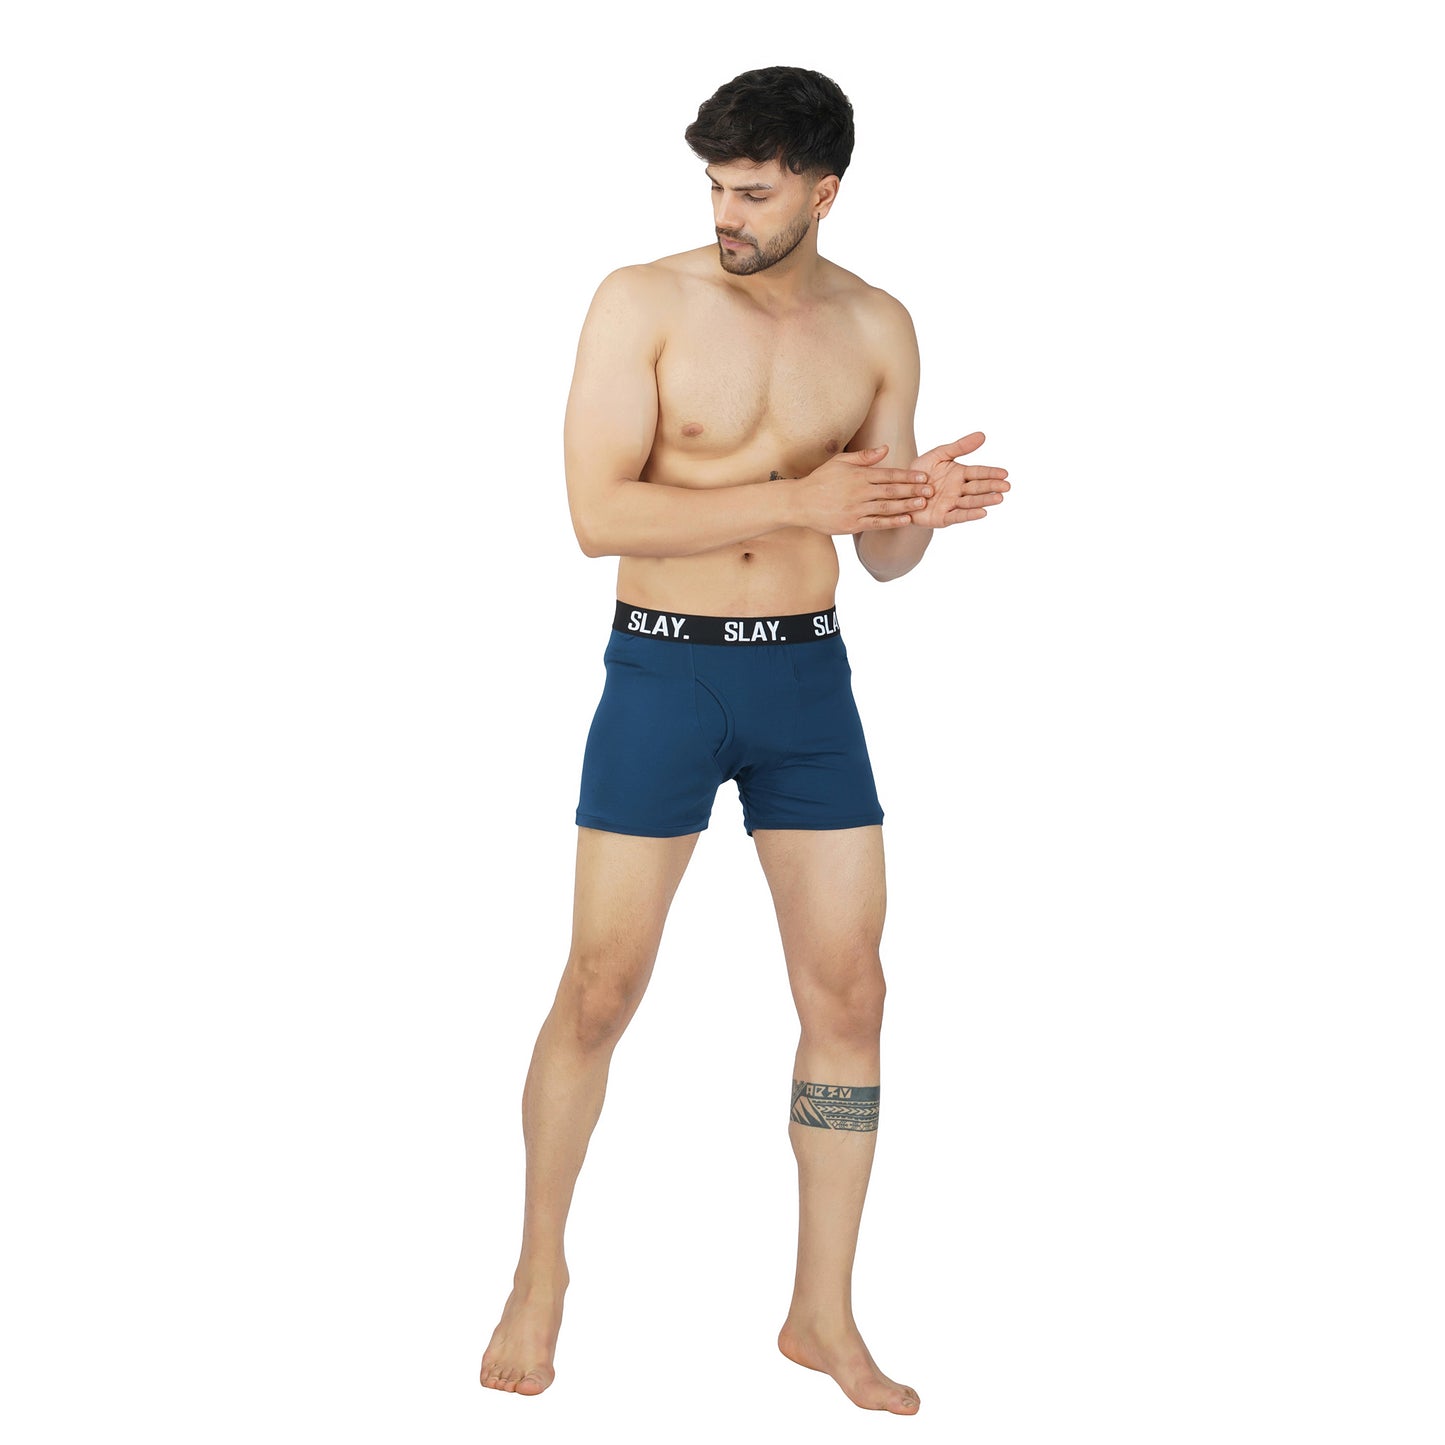 SLAY. Men's Blue Underwear Trunks